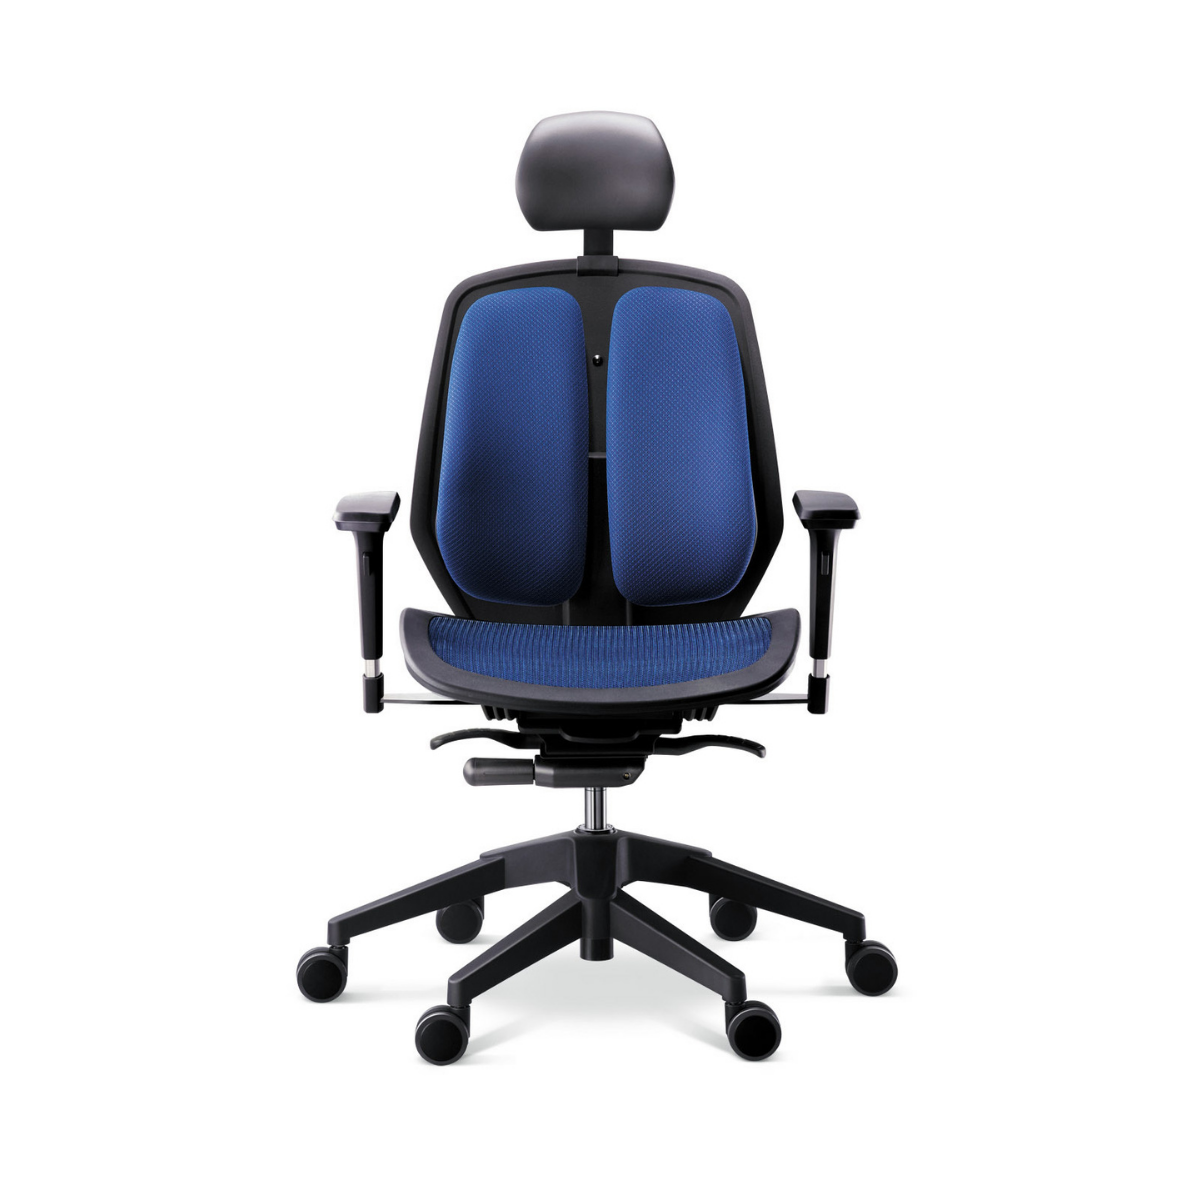 Модель офисного кресла. DUOREST Alpha a80h. Офисное кресло DUOREST Alpha a80h. DUOREST Alpha a30 DT Green. Ортопедическое компьютерное кресло DUOREST.